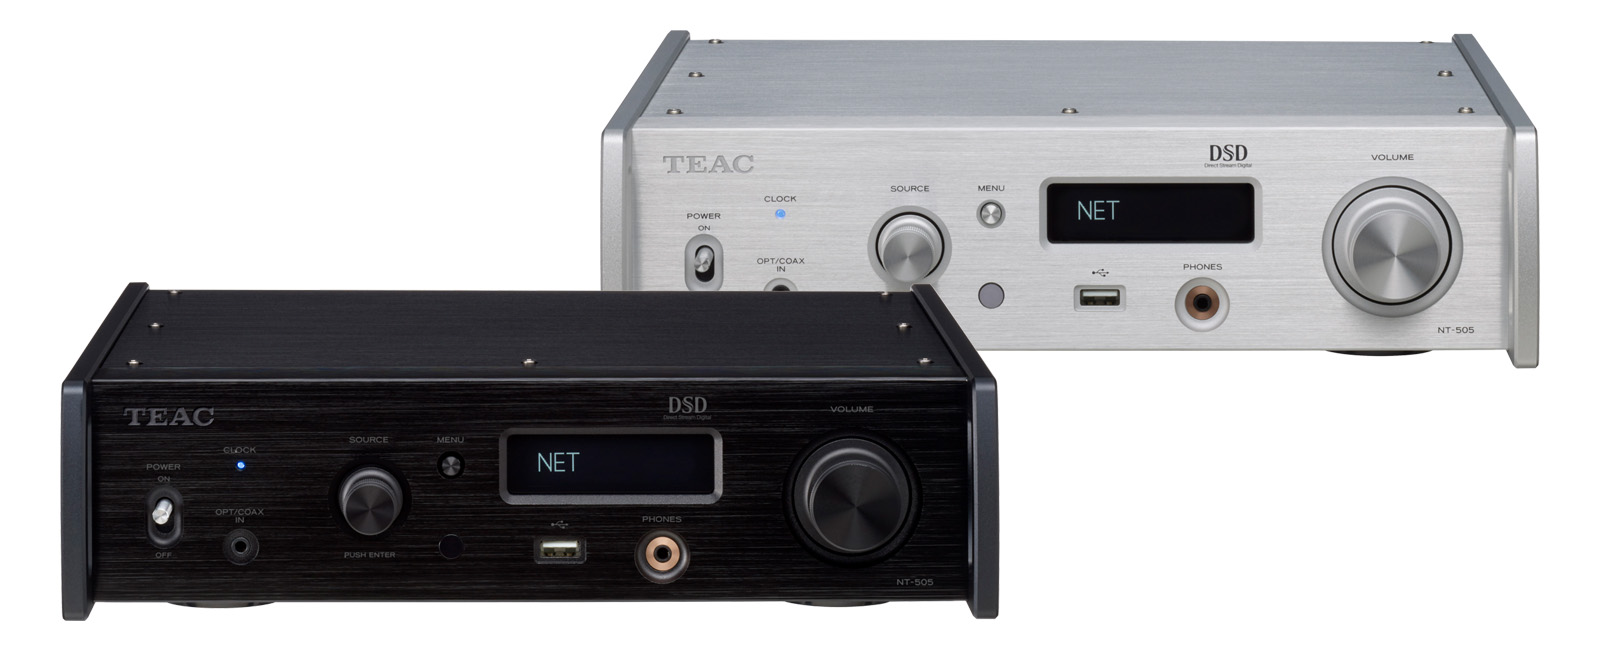 NT-505 | 製品トップ | TEAC - オーディオ製品情報サイト